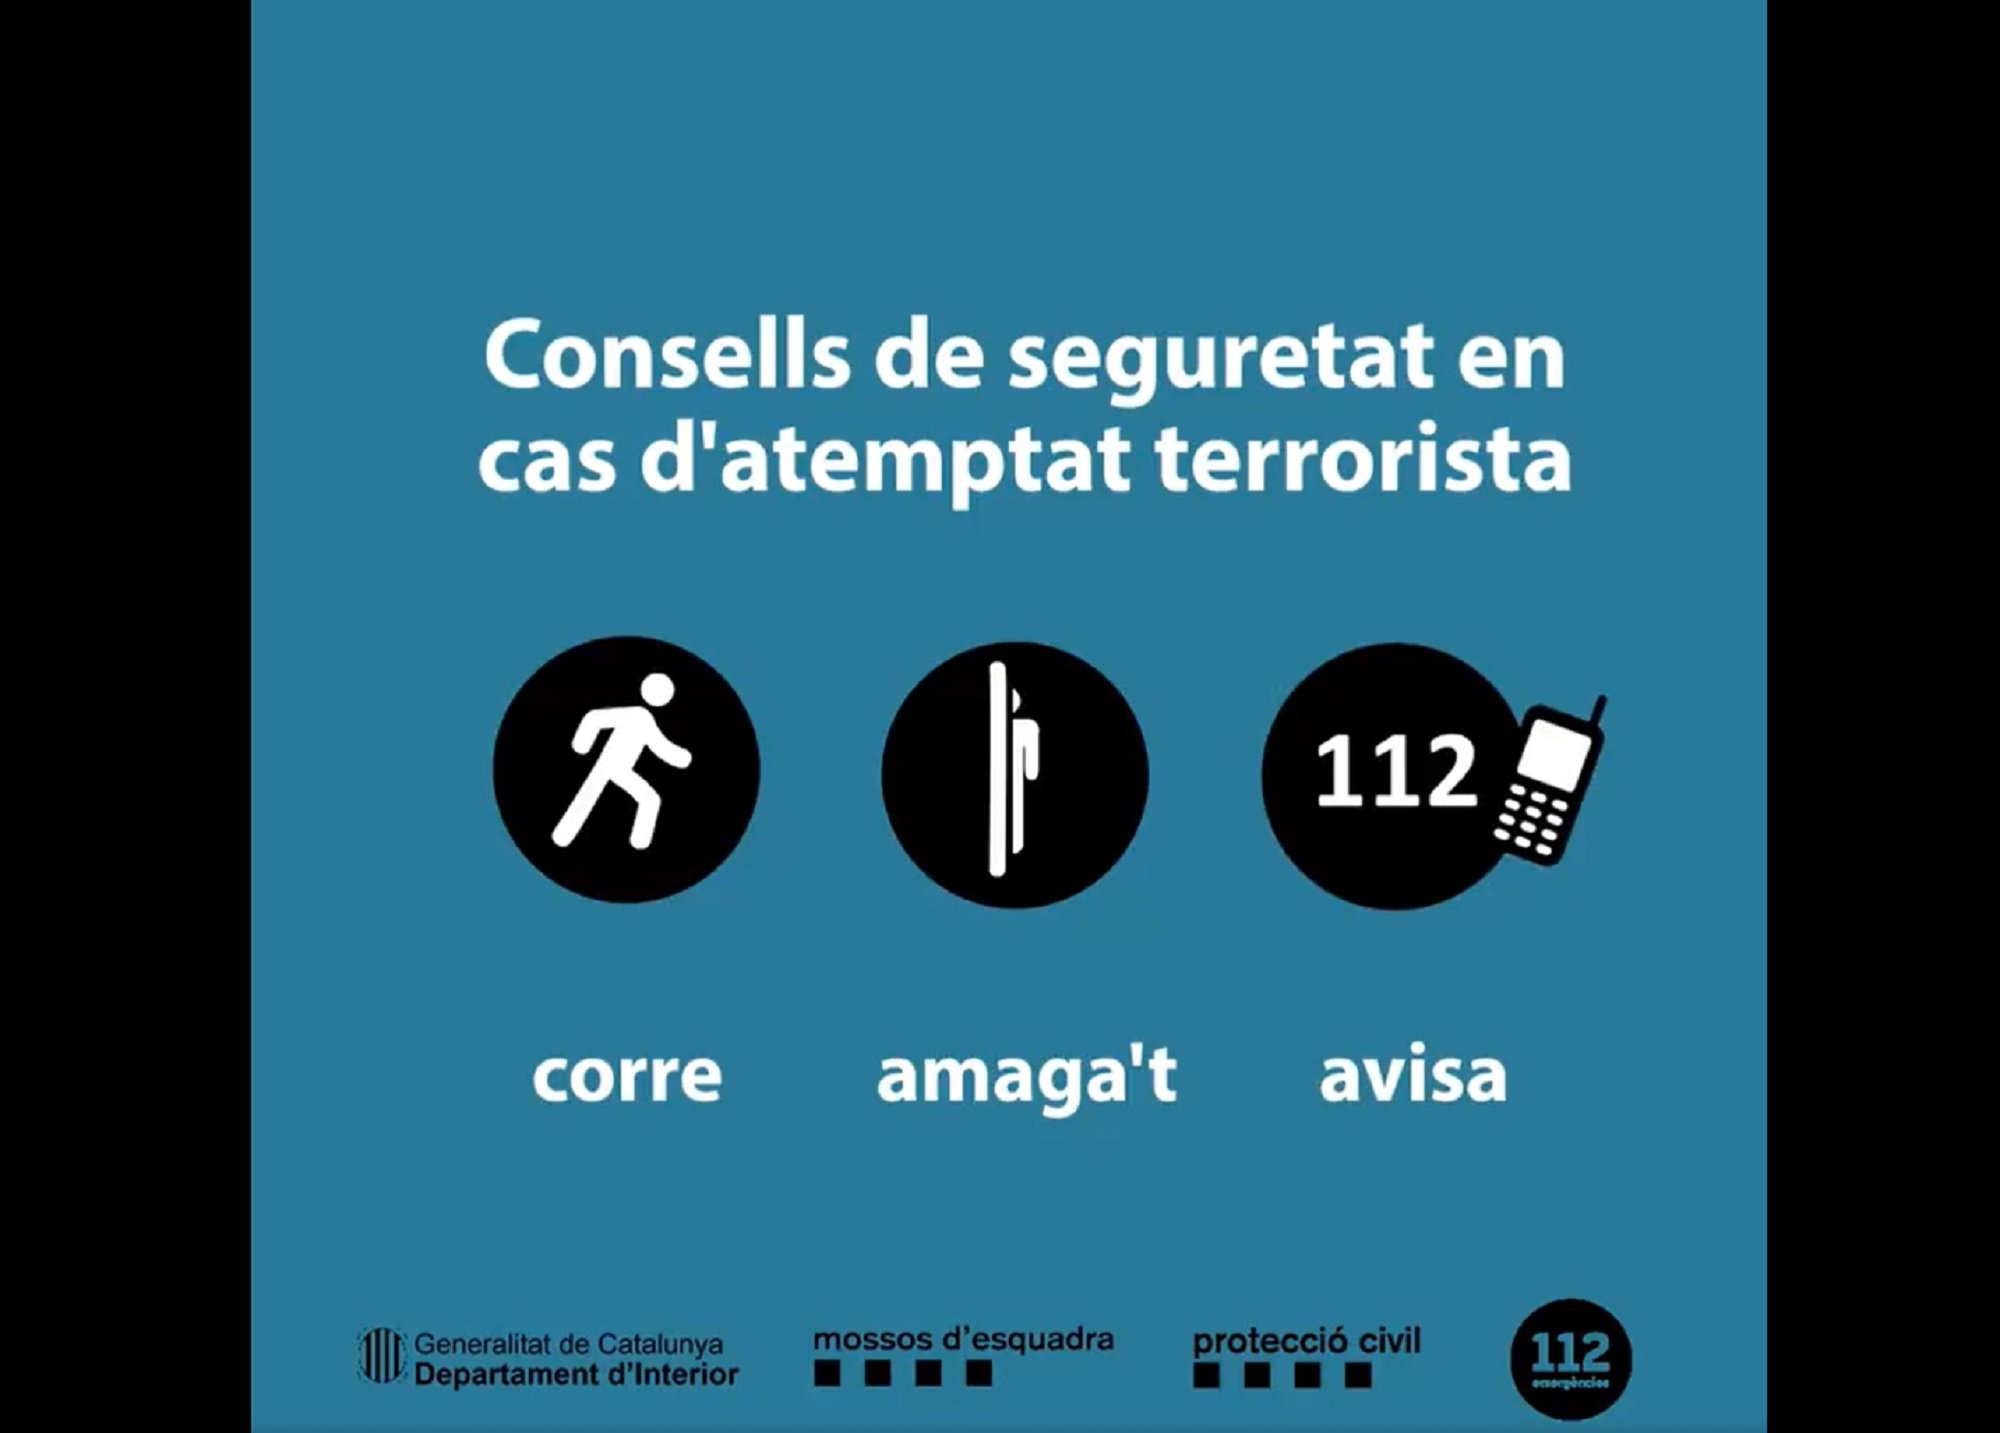 El Mossos advierten en caso de atentado terrorista: "Corre, escóndete y avisa"